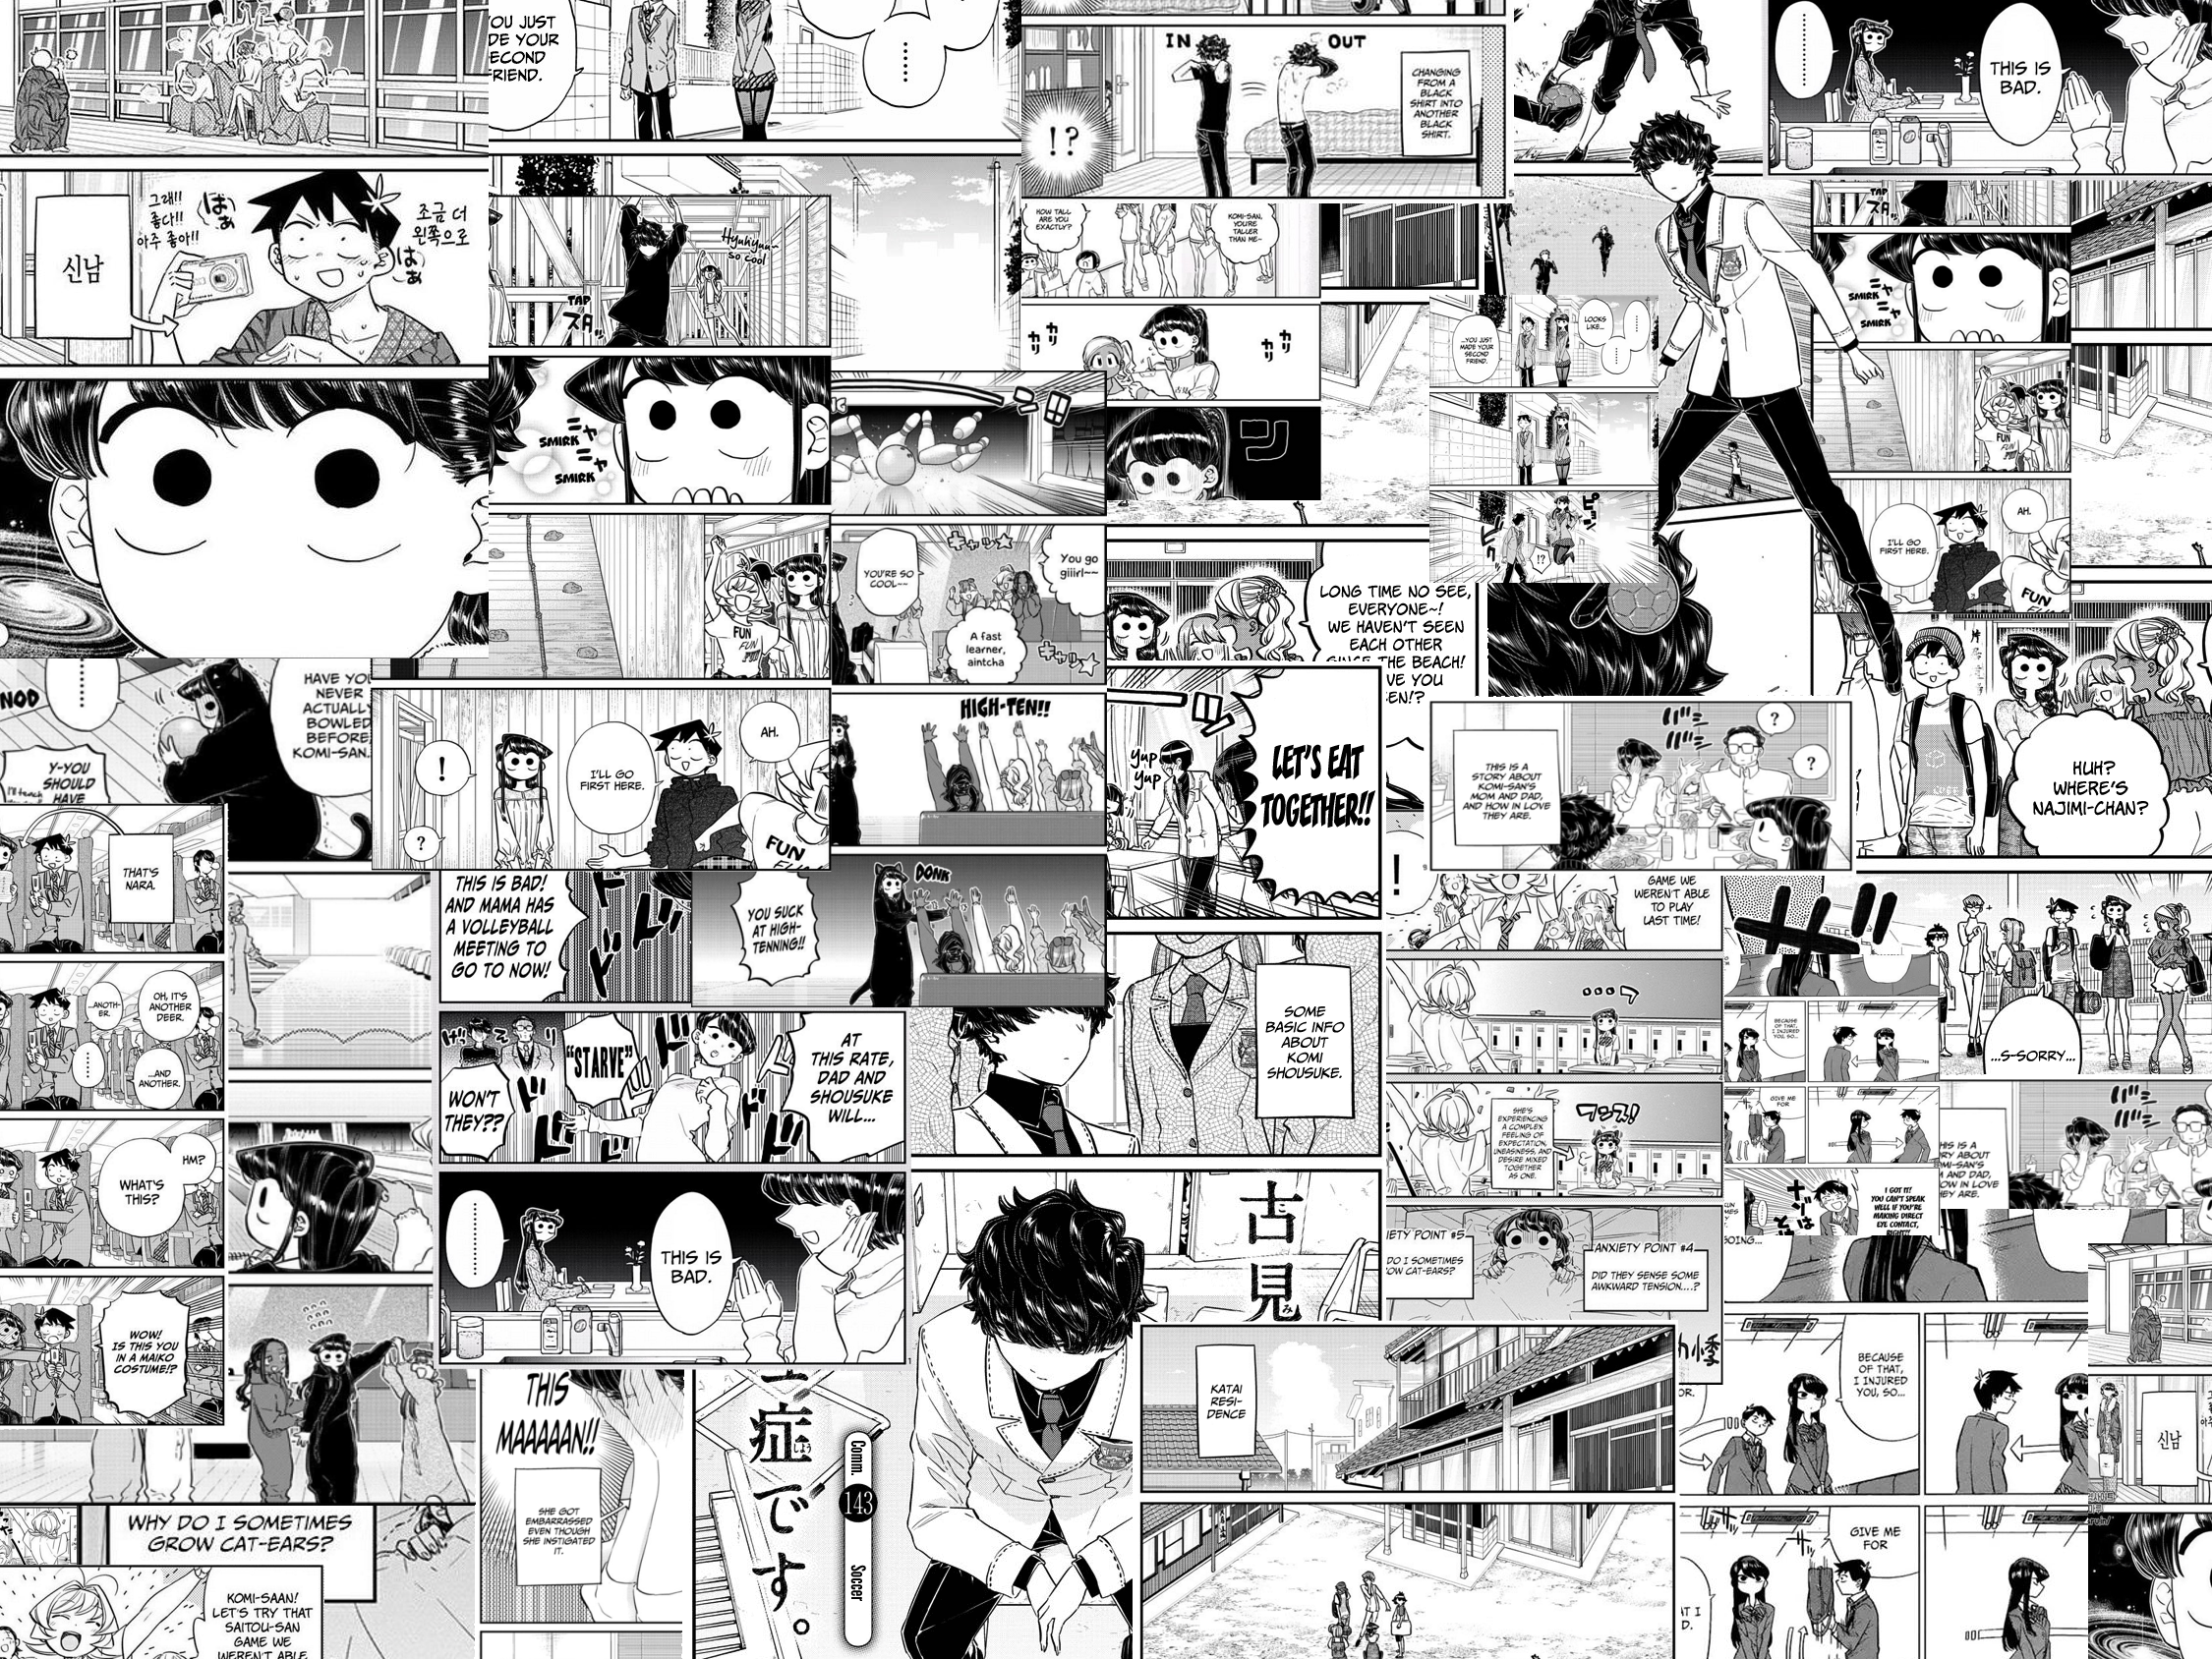 Manga Panel Wallpapers